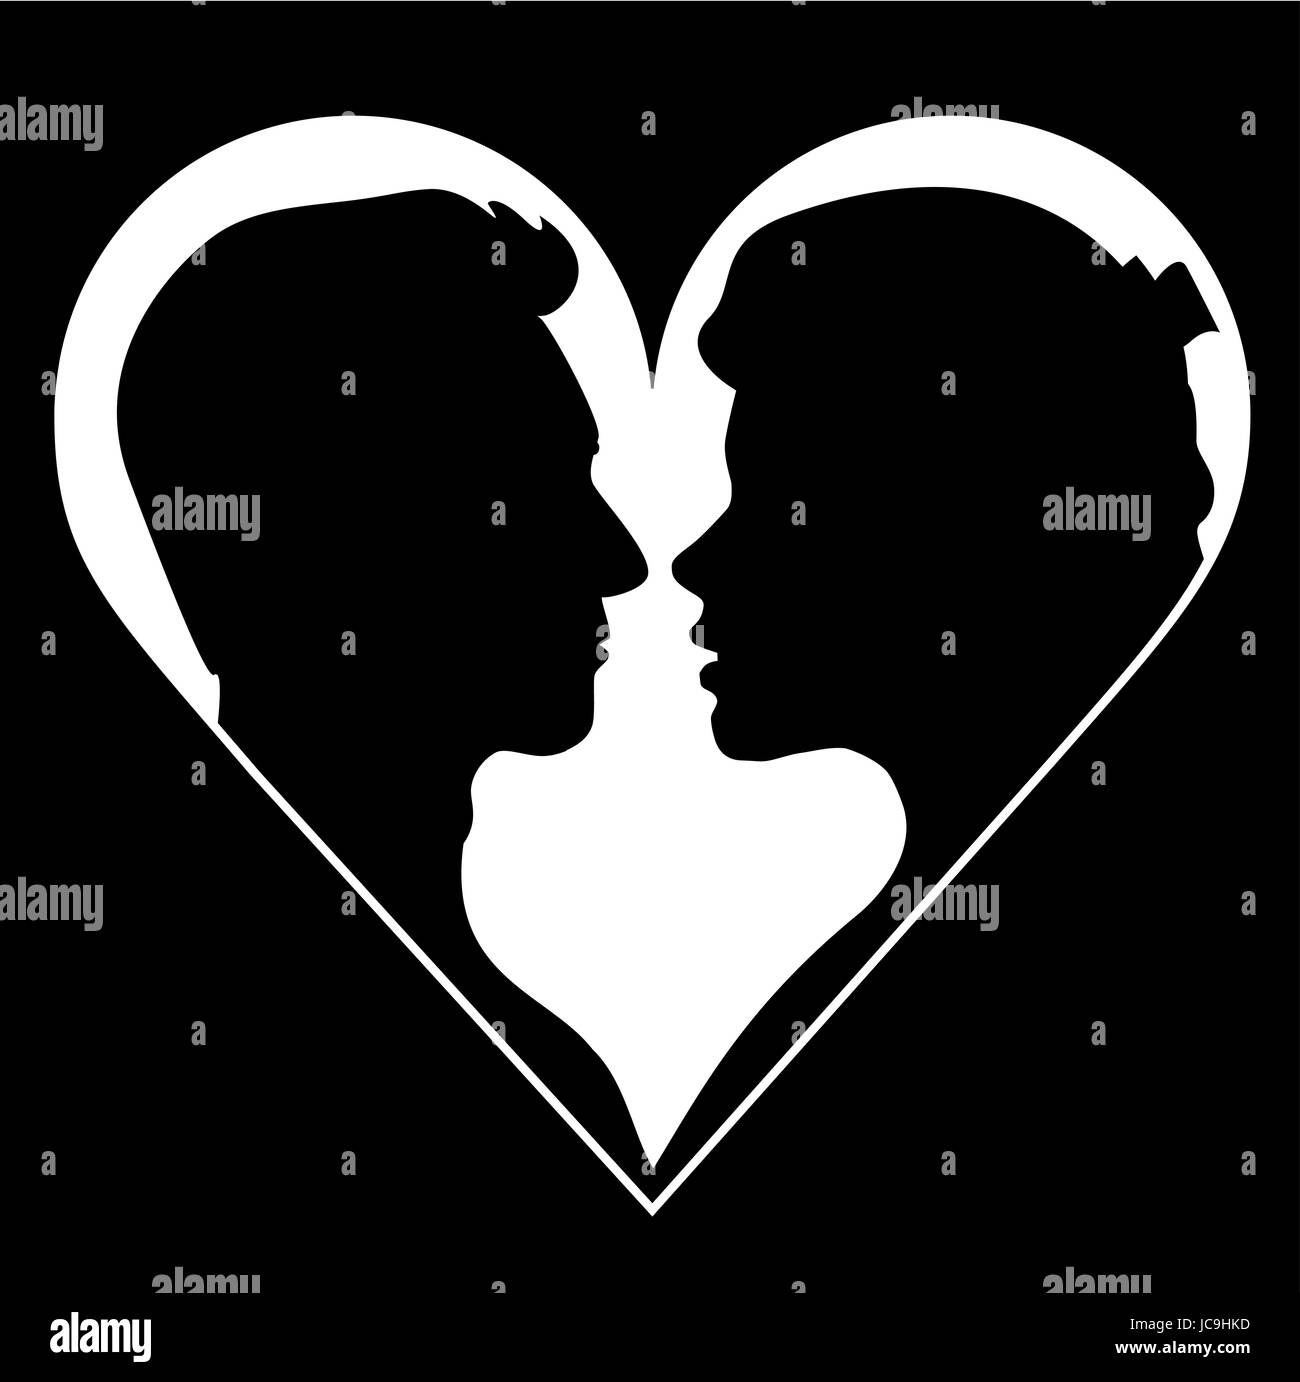 Couple Profile Love Heart Design Banque D Images Noir Et Blanc Alamy